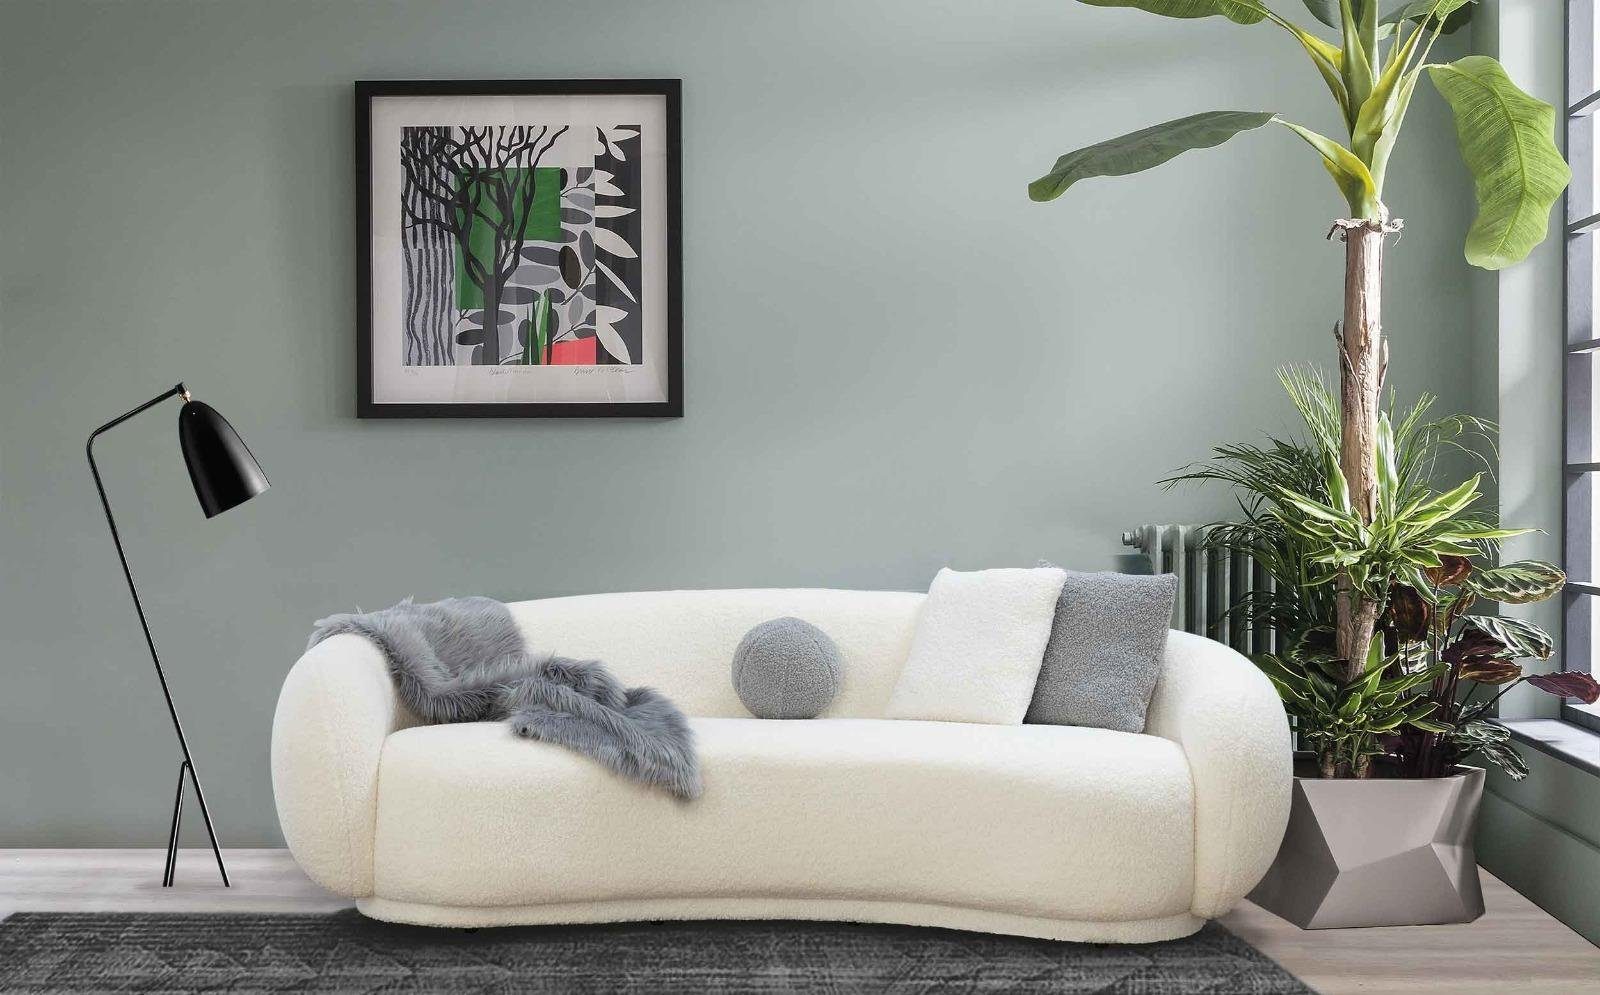 JVmoebel Sofa, Wohnzimmer Dreisitzer Couch Design Möbel Einrichtung Polster Textil